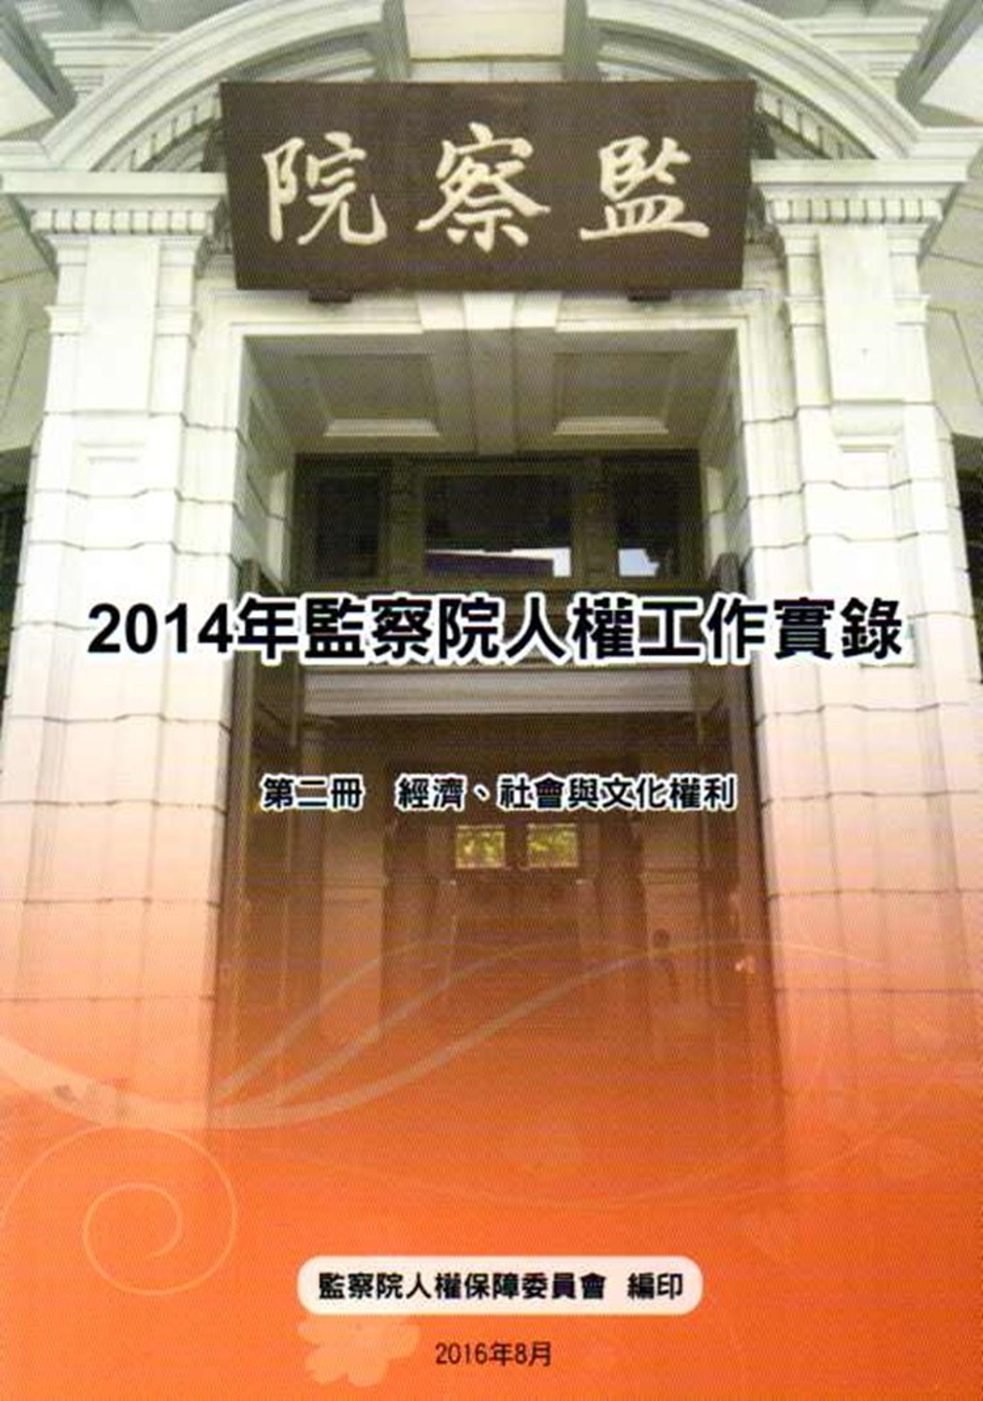 2014年監察院人權工作實錄